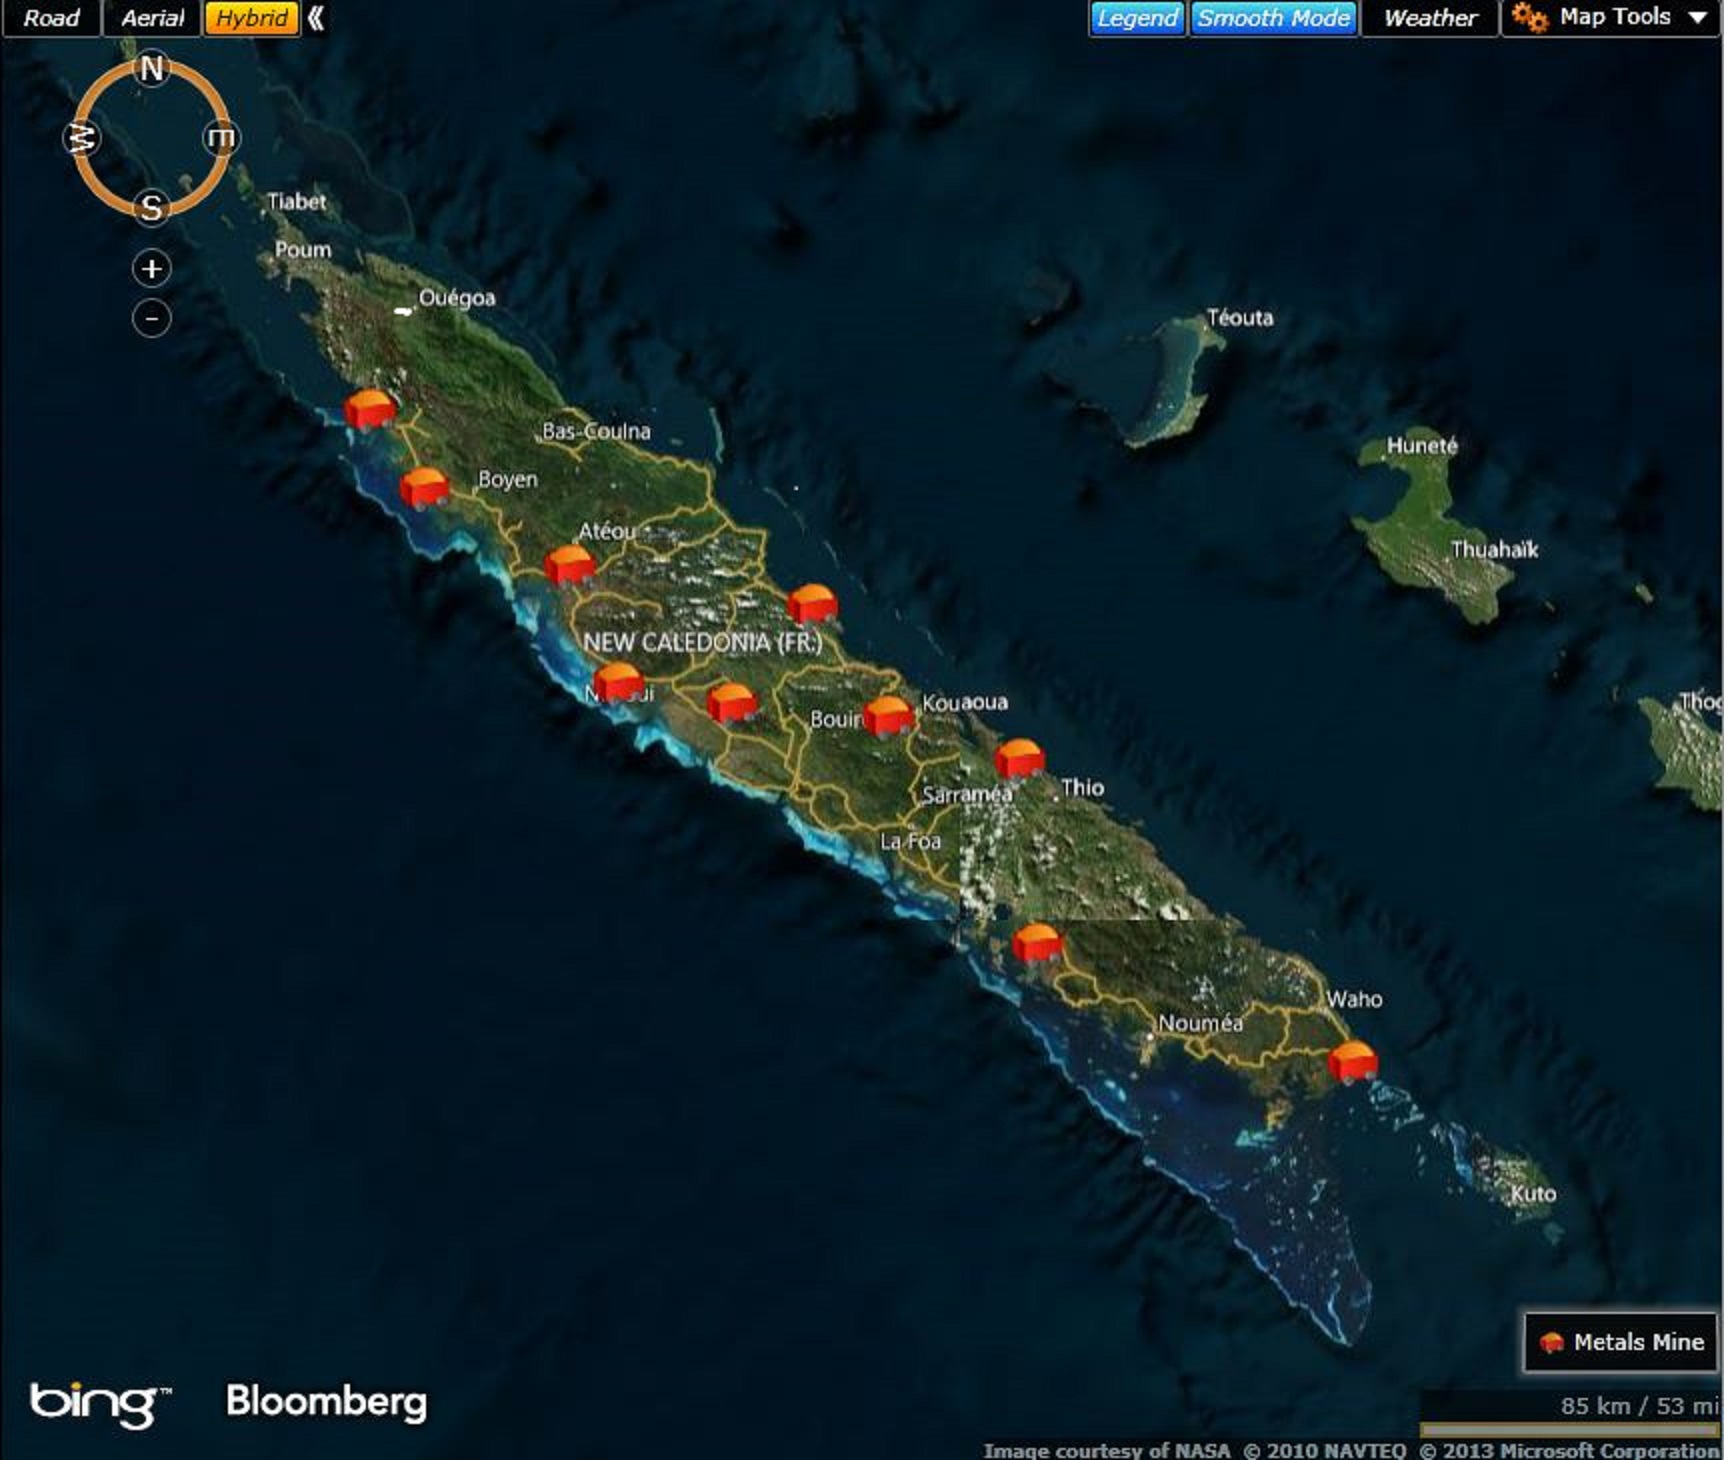 ニッケルの島ニューカレドニア 採算割れ続く 鉱山会社の減産進まず Bloomberg